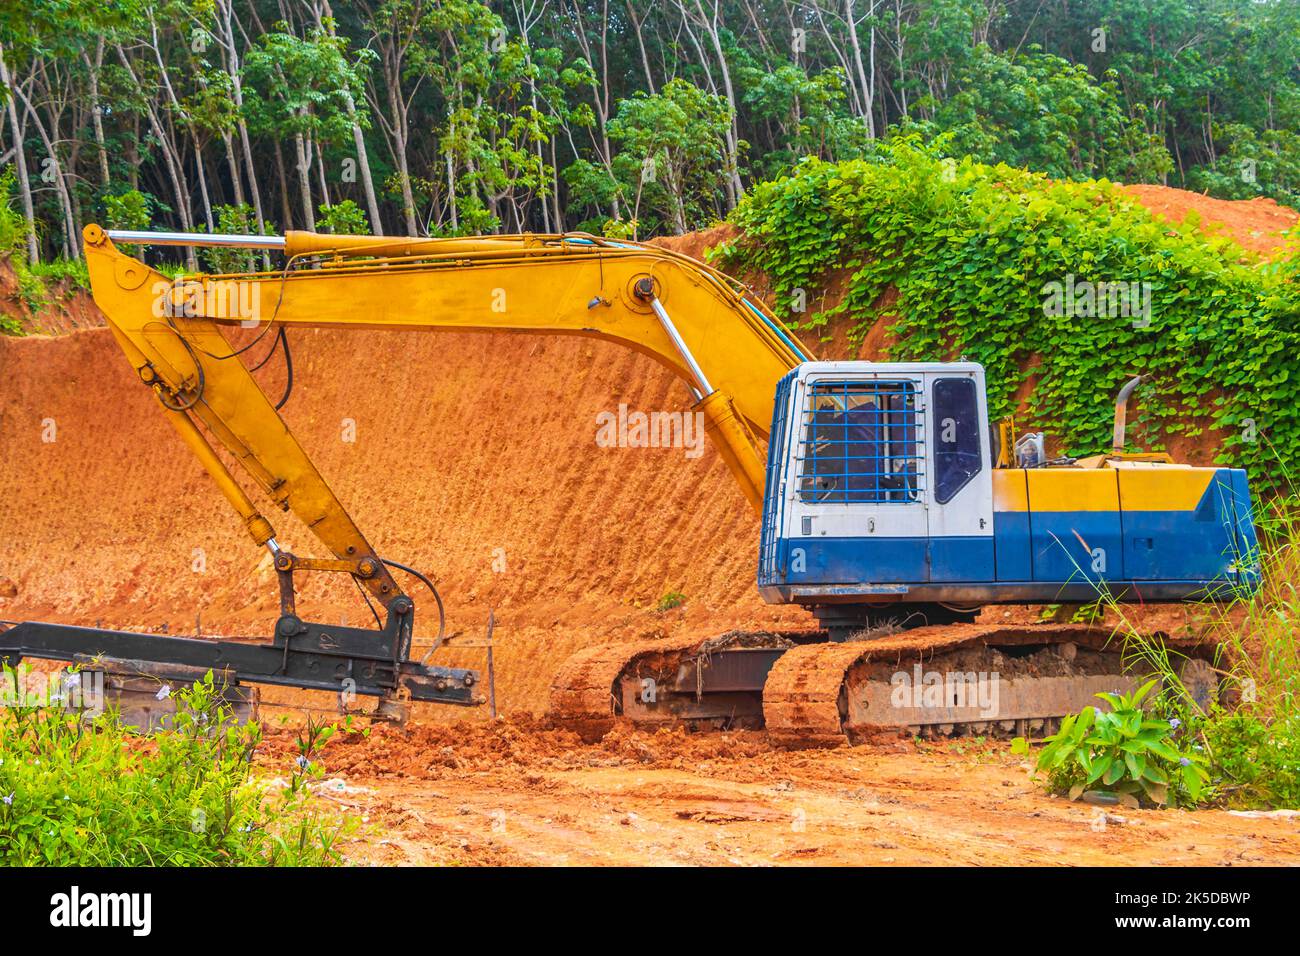 De grandes excavateurs jaunes détruisent la jungle forestière de Sakhu Thalang sur l'île de Phuket en Thaïlande dans la Southeastasie Asie. Banque D'Images